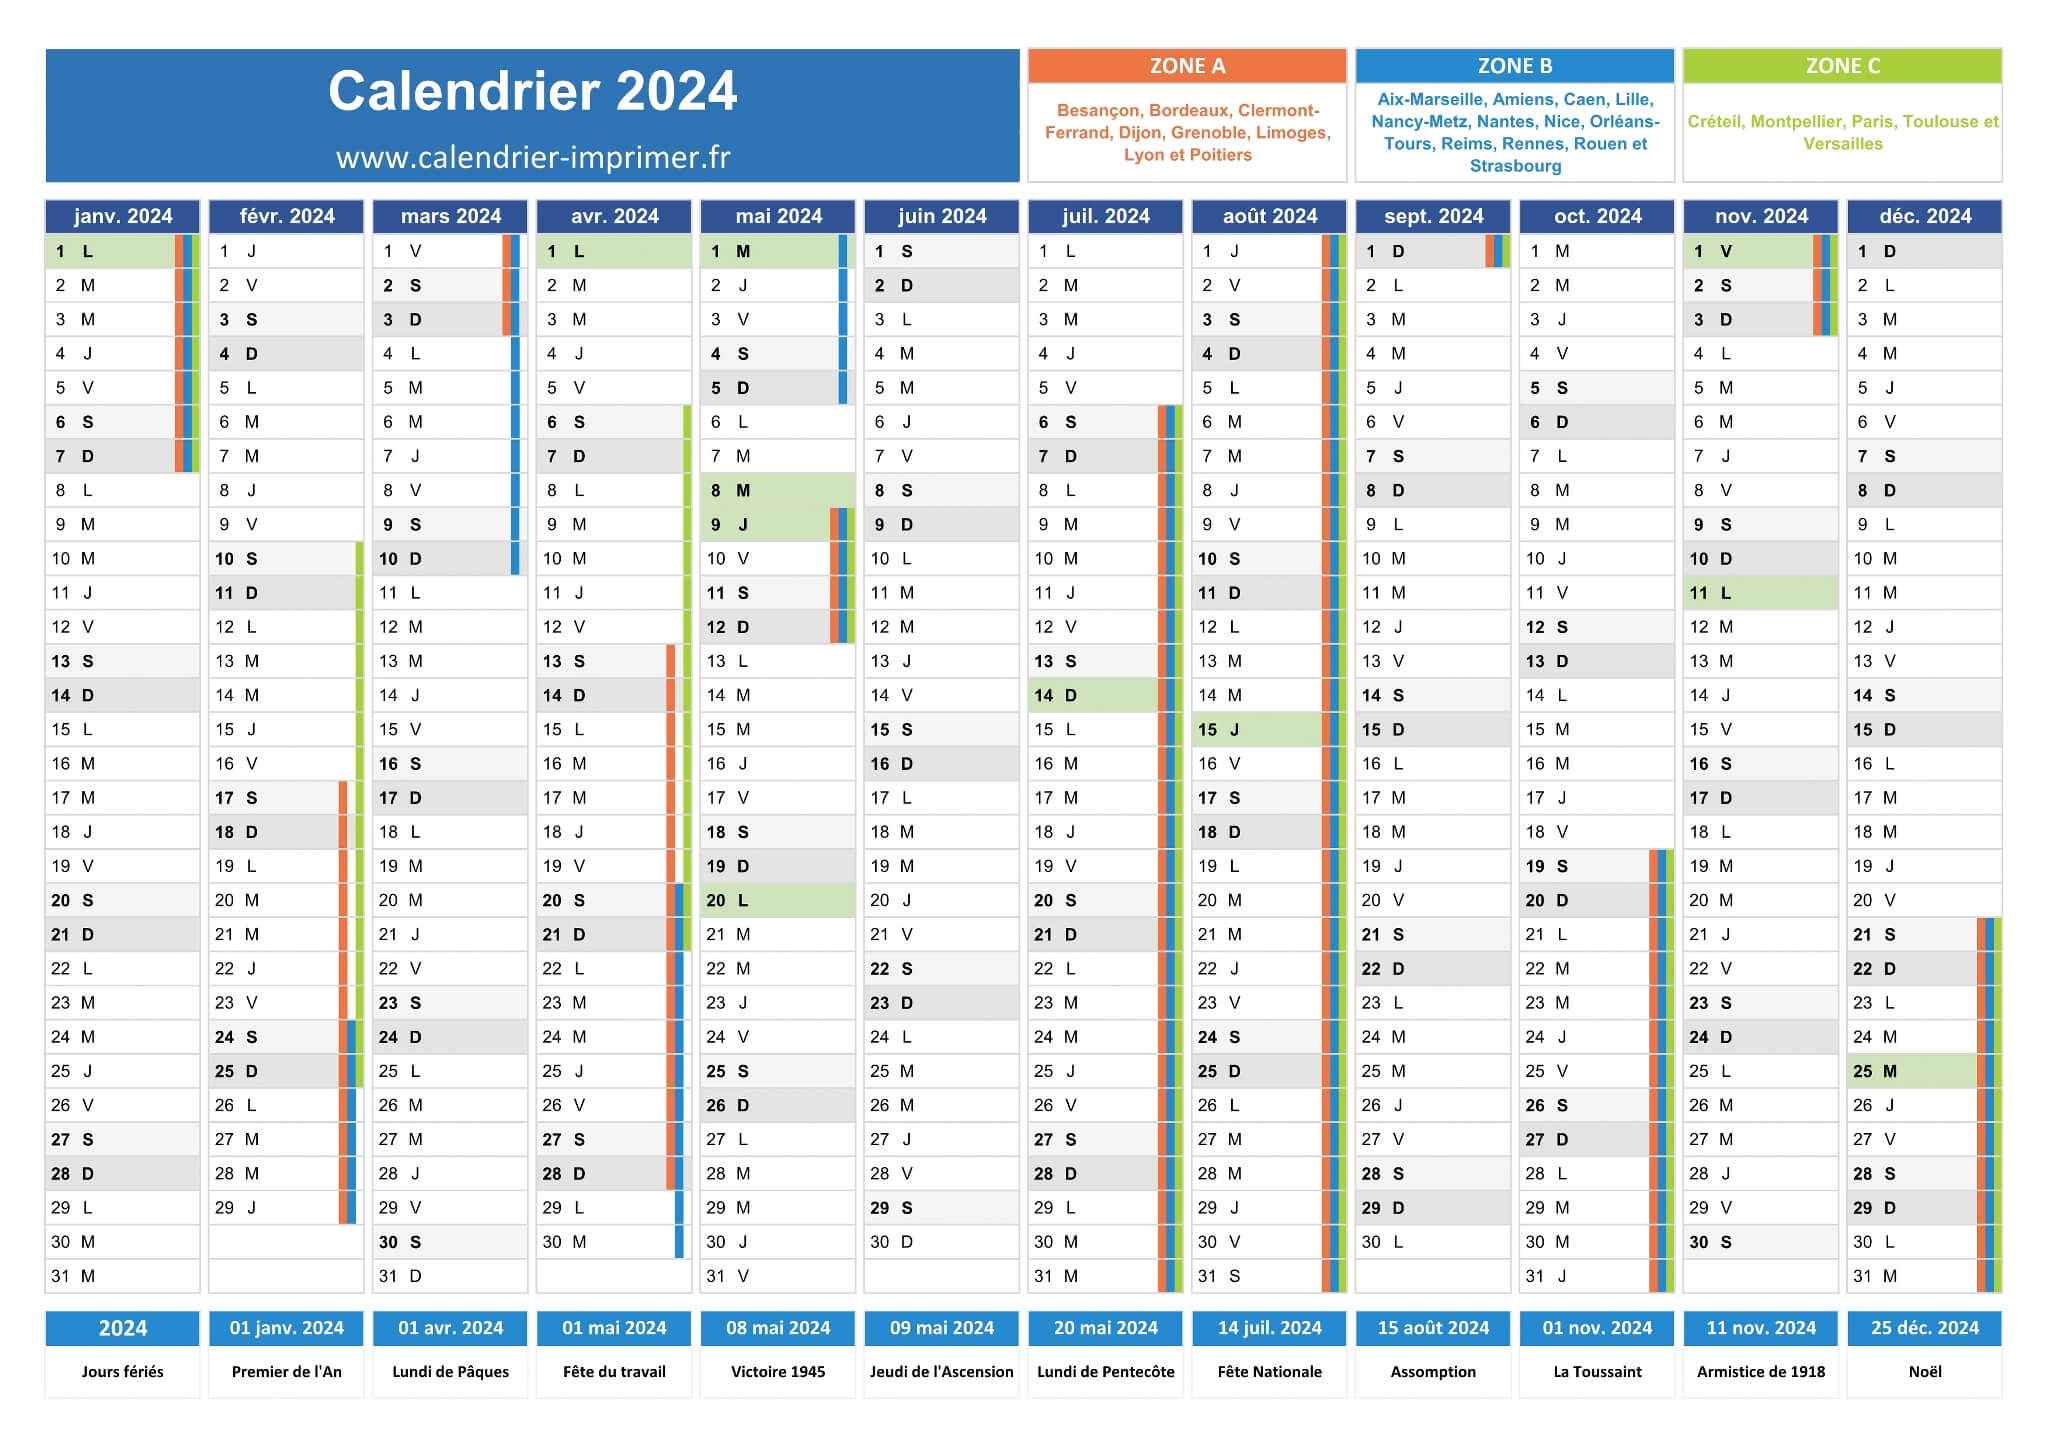 Calendrier de l'Année 2024 avec dimanche comme premier jour